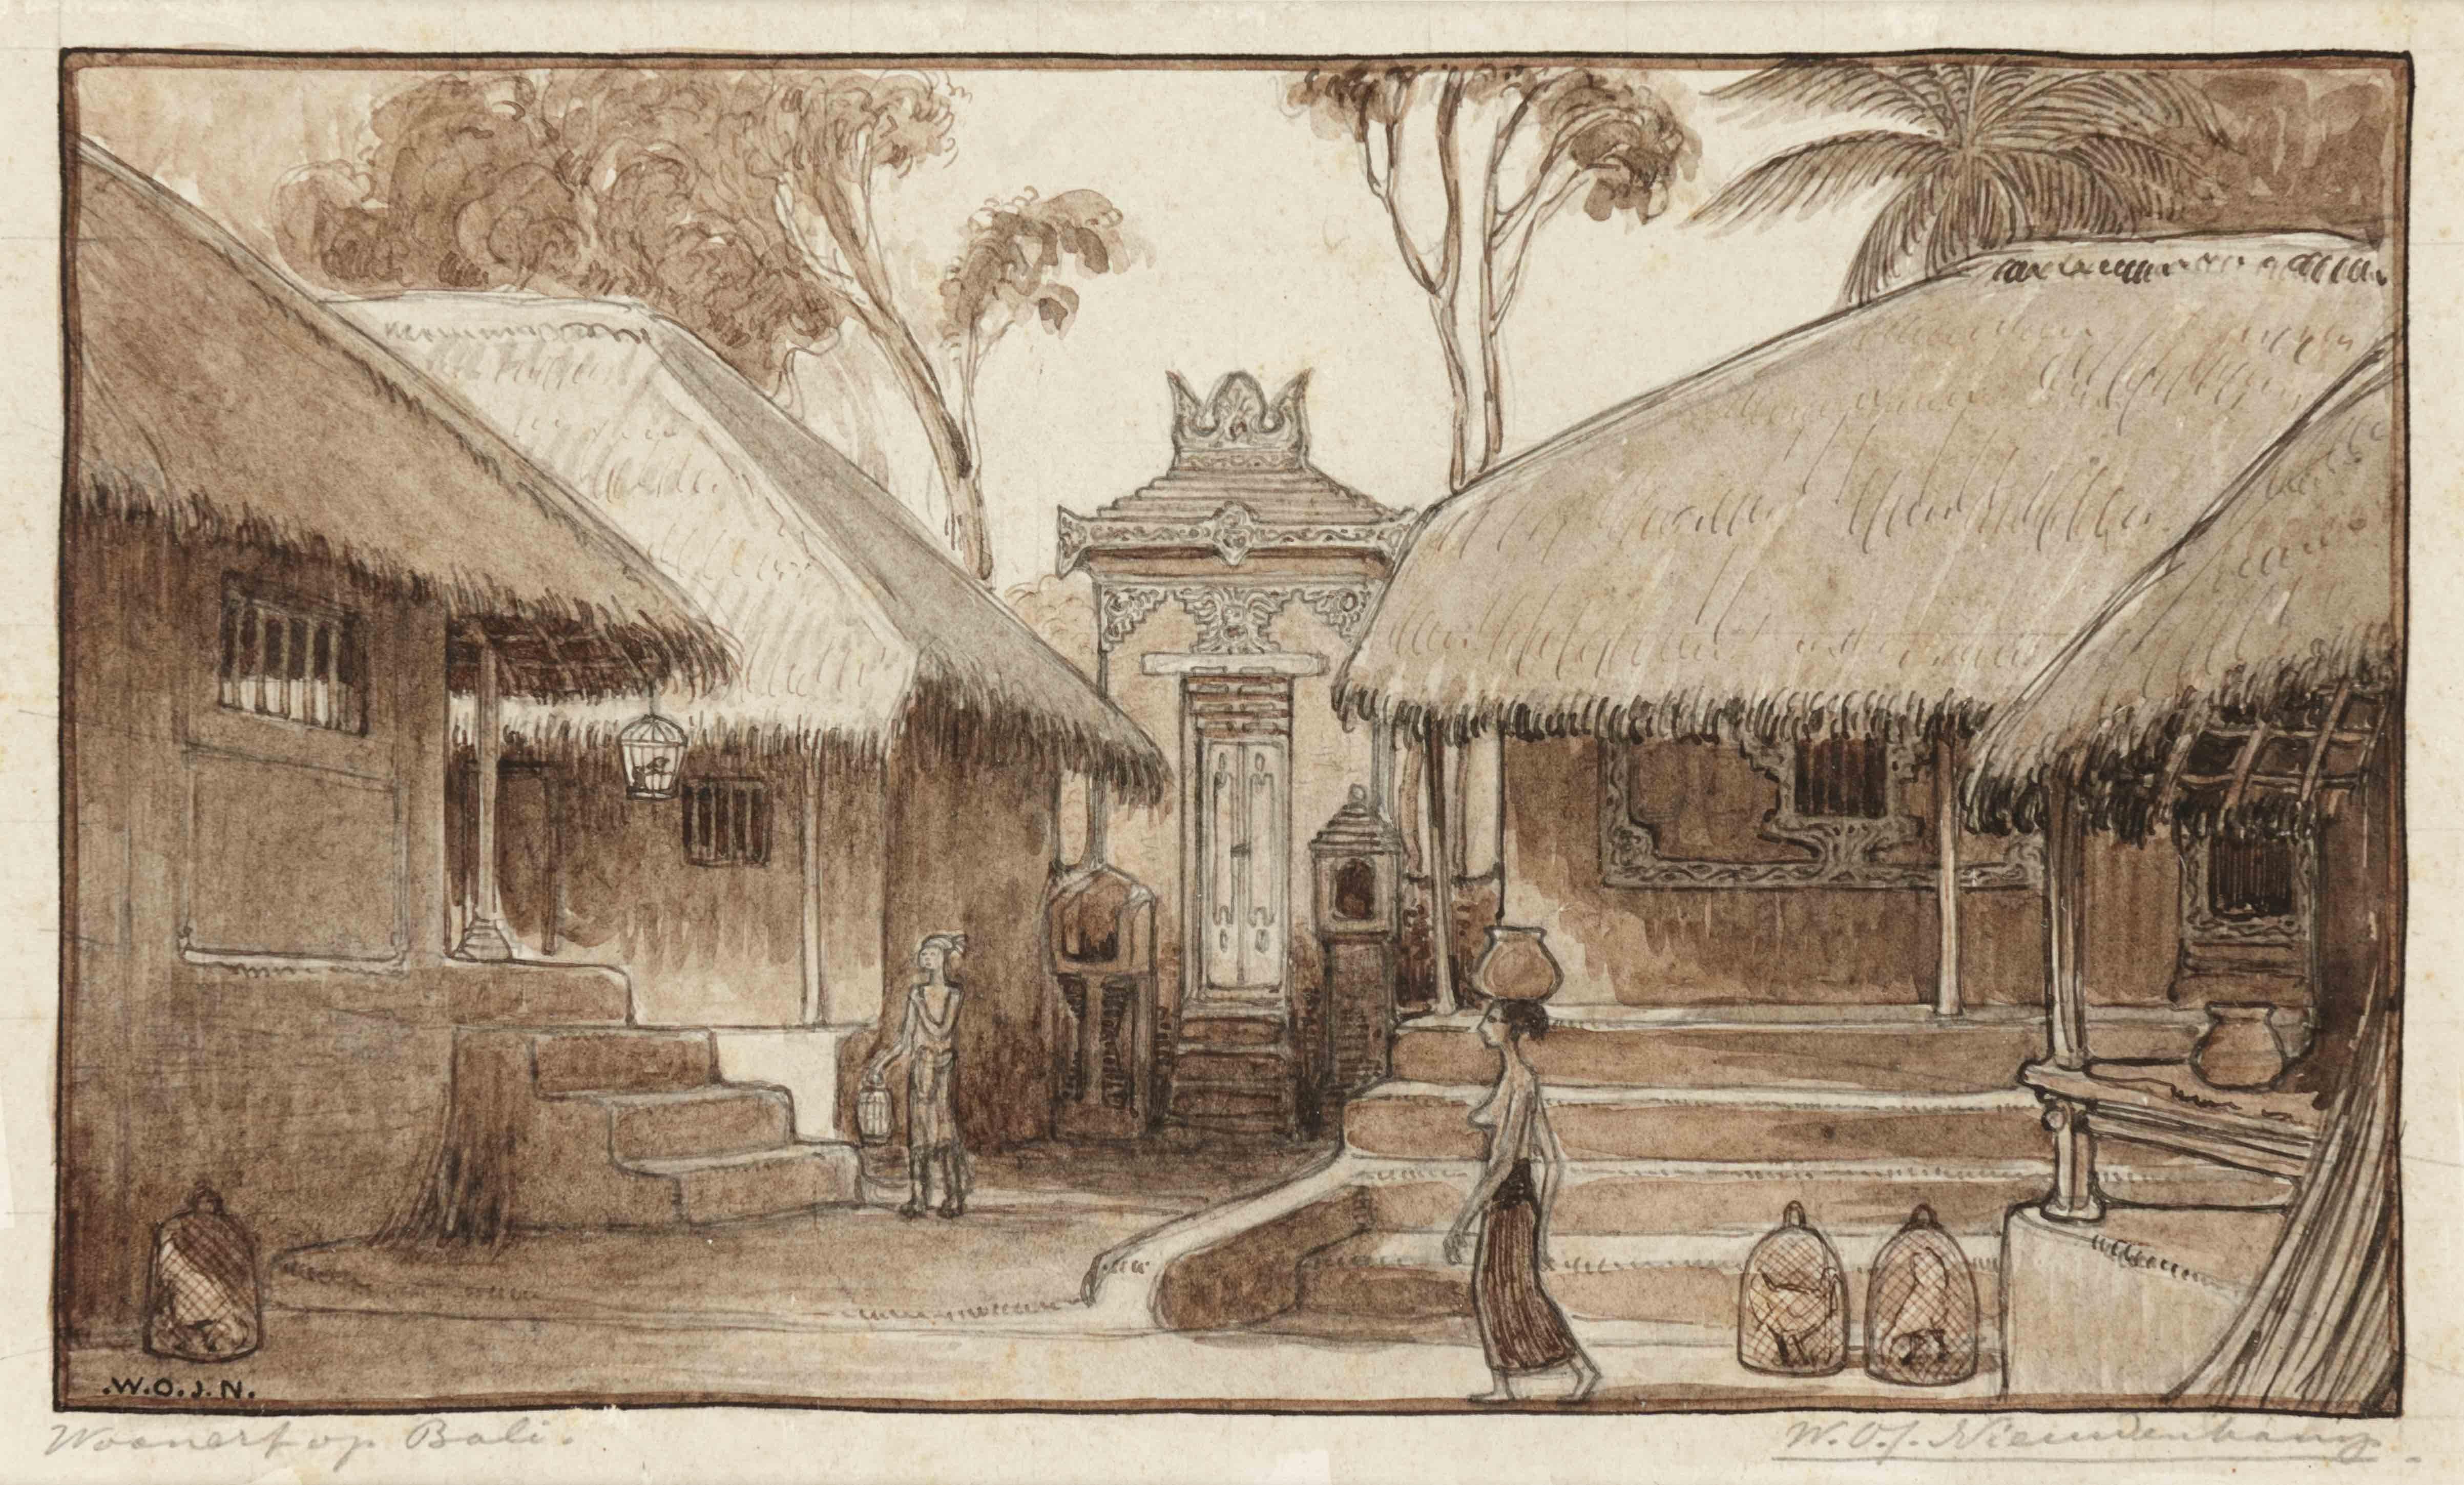 W.O.J. Nieuwenkamp Landscape Art - Village Northern Bali, 1906